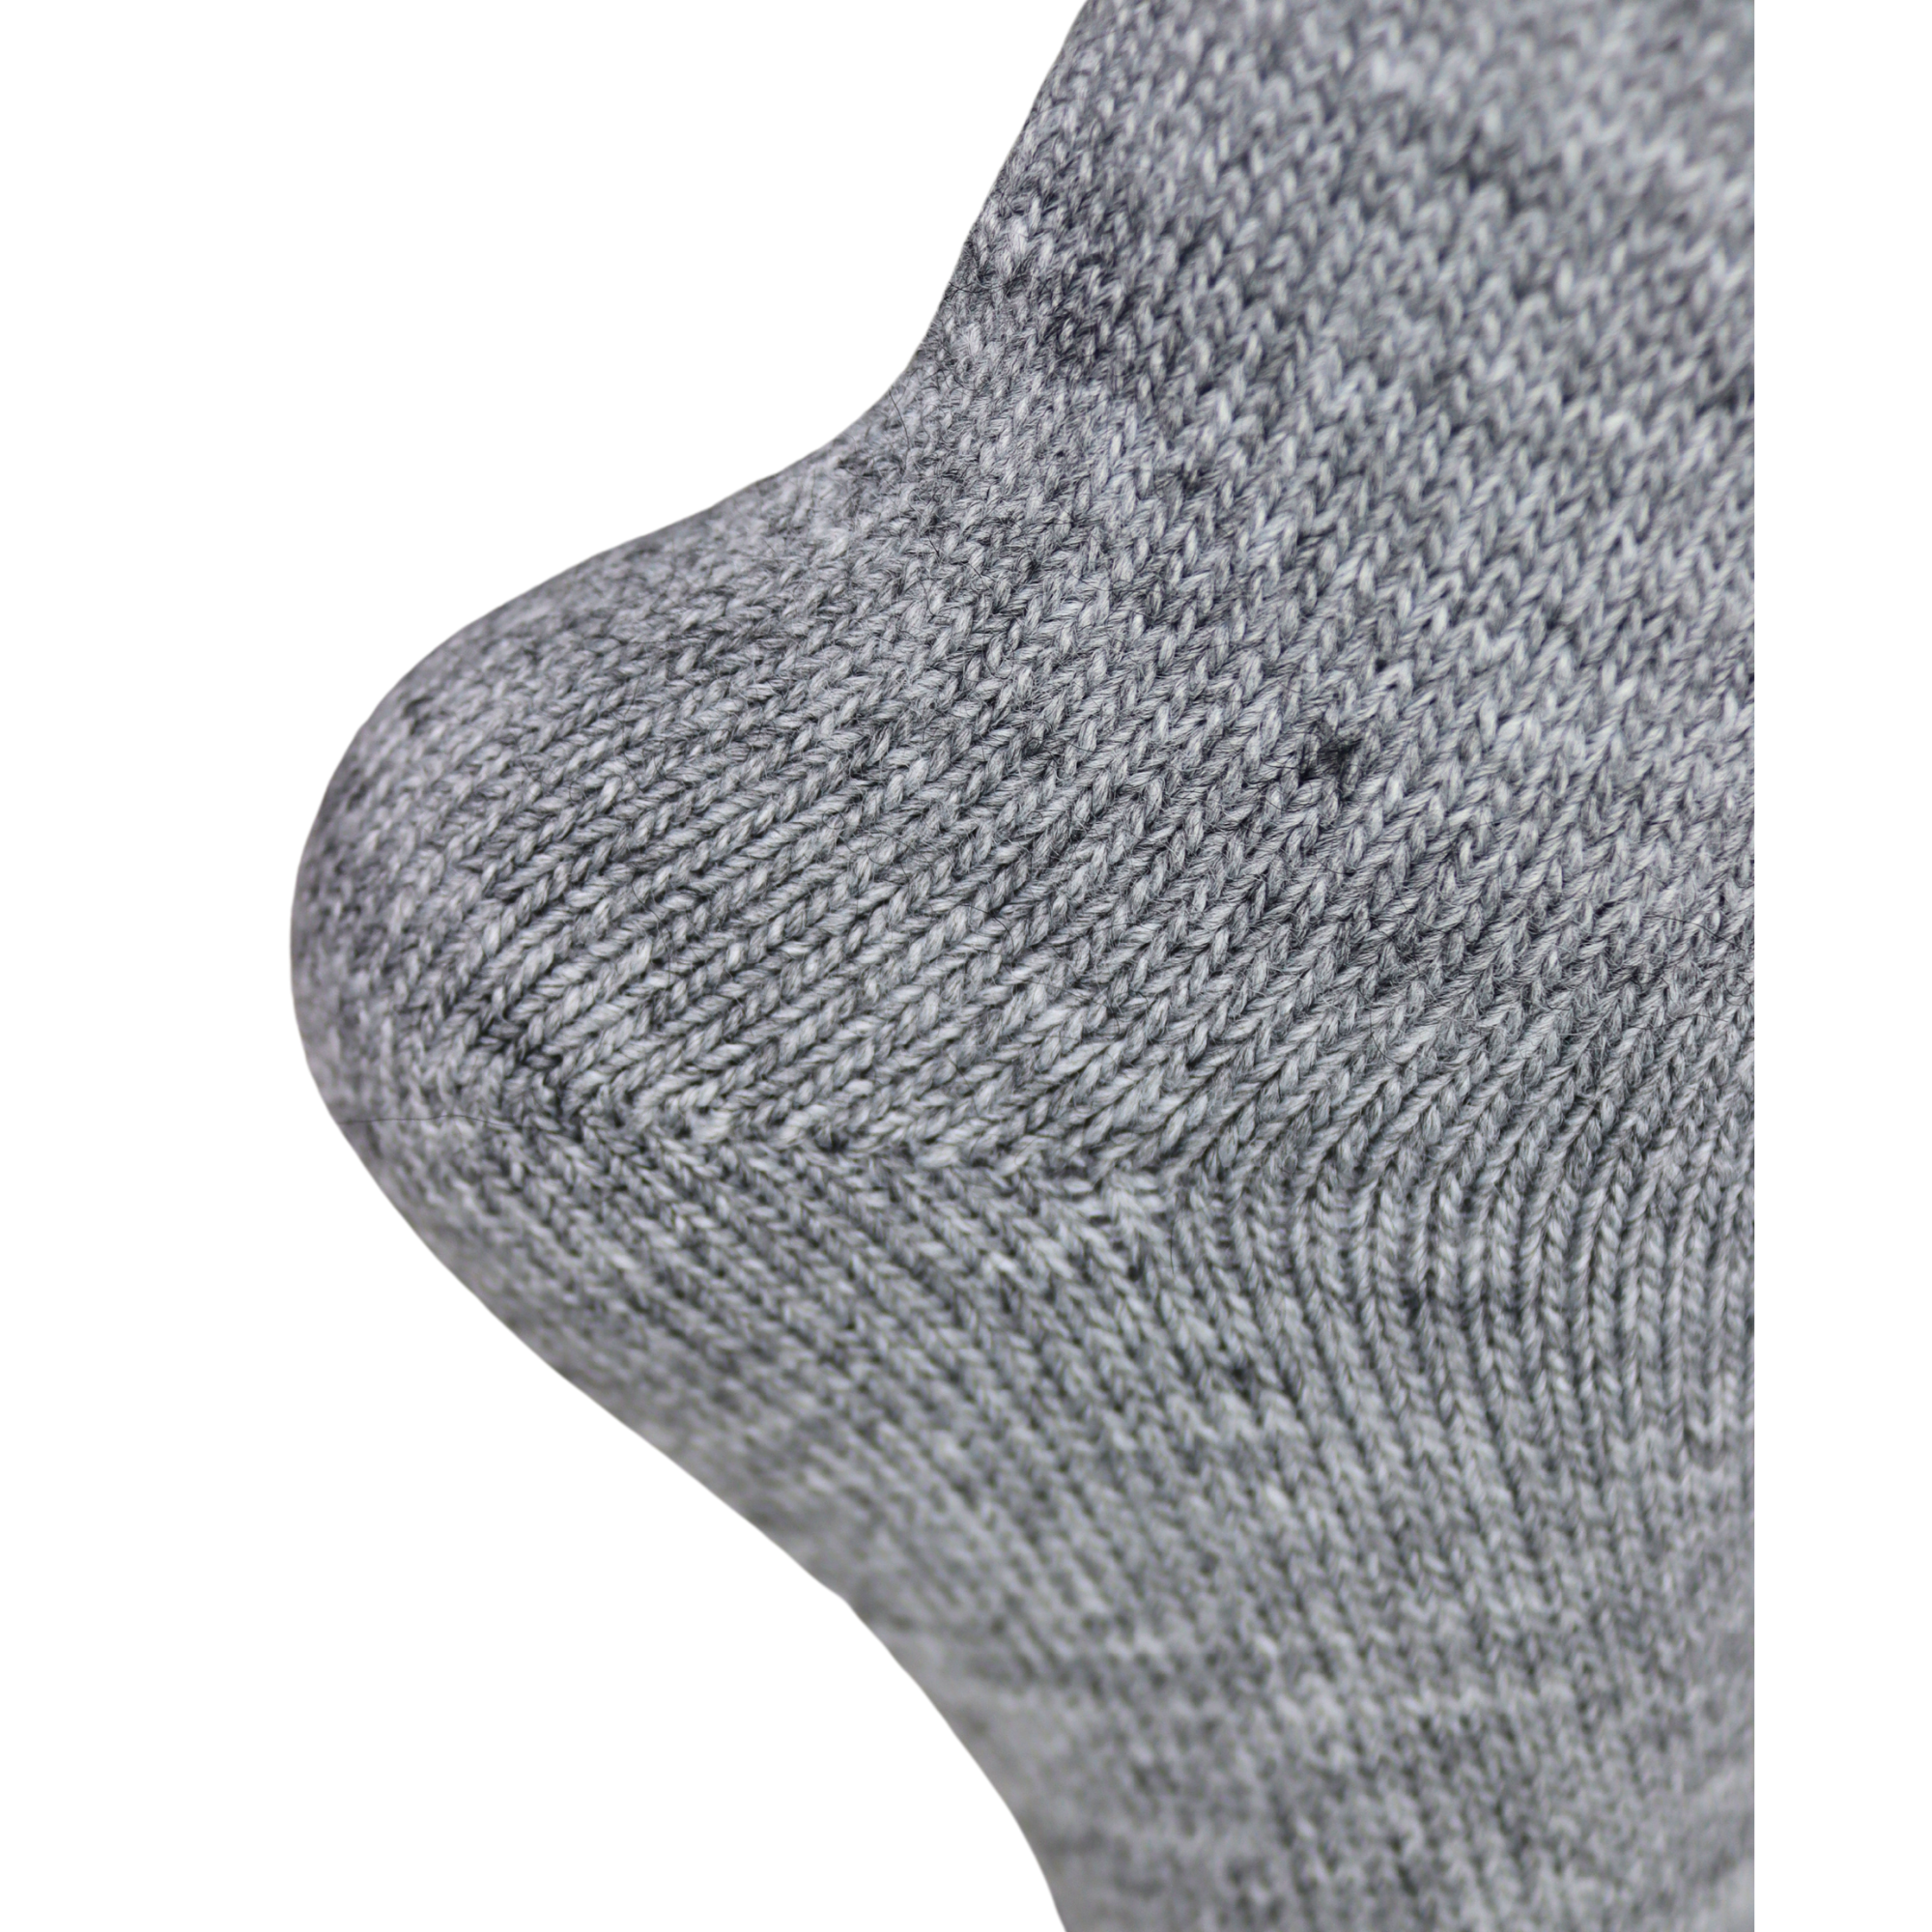 Louluu Women Grey Colour Lambswool Socks